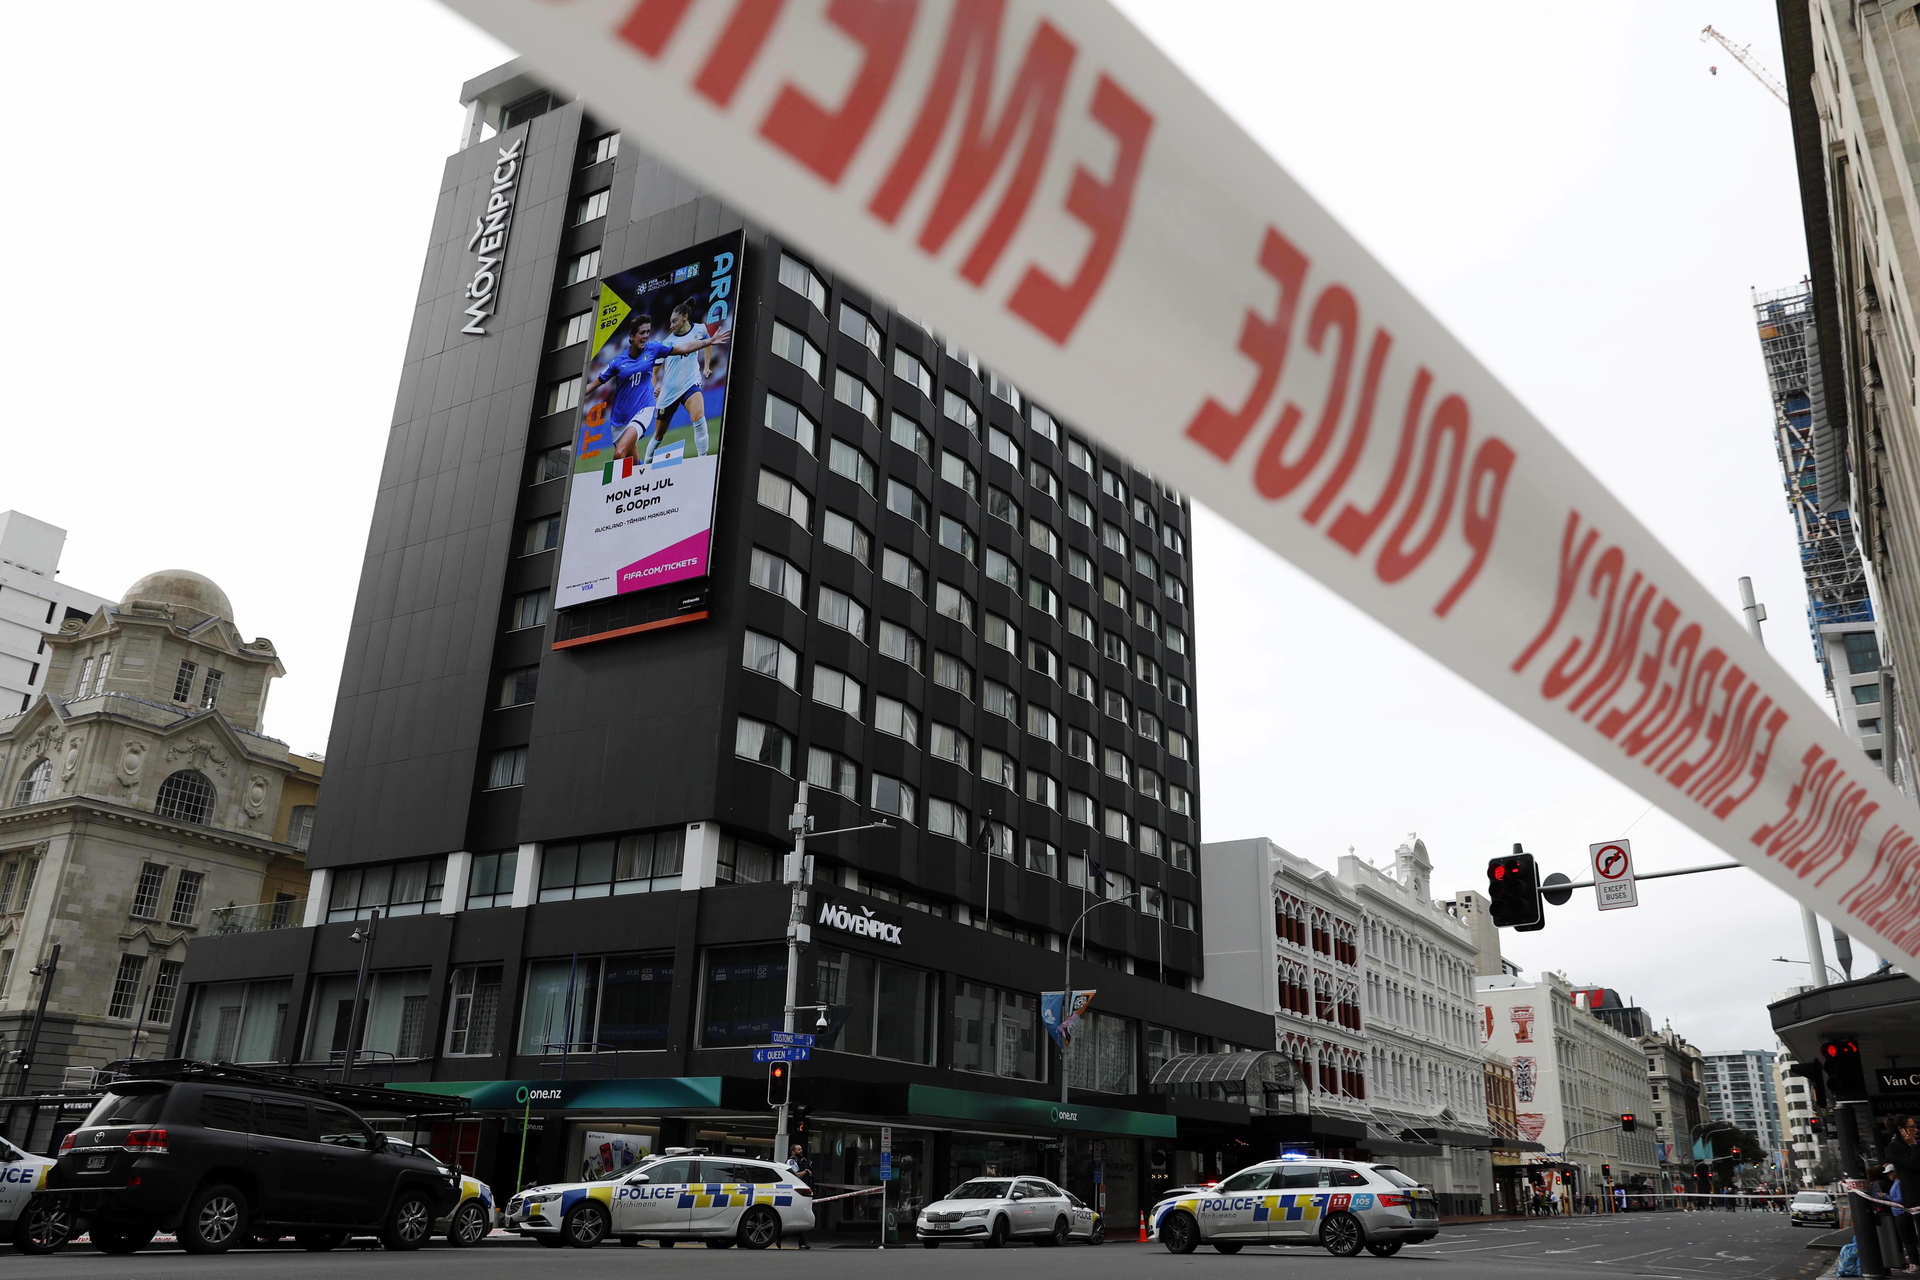 El tiroteo en Nueva Zelanda no afectará a la organización del Mundial, asegura la Policía